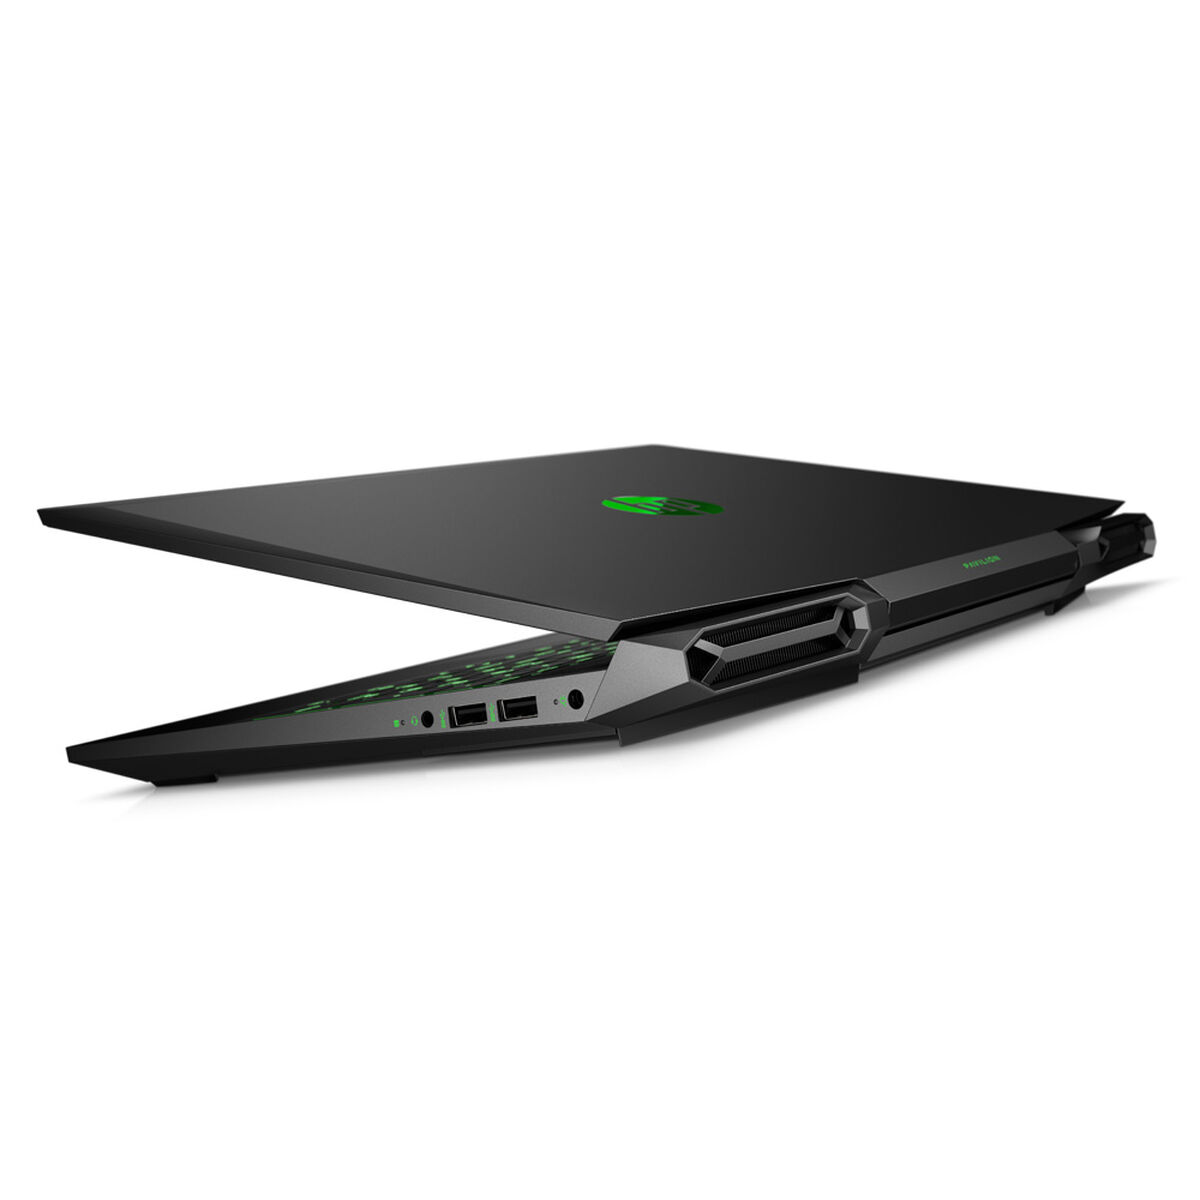 Notebook Gamer HP 15-dk0005la Core i7-9750H 8GB 256GB SSD 15.6" NVIDIA GTX1050